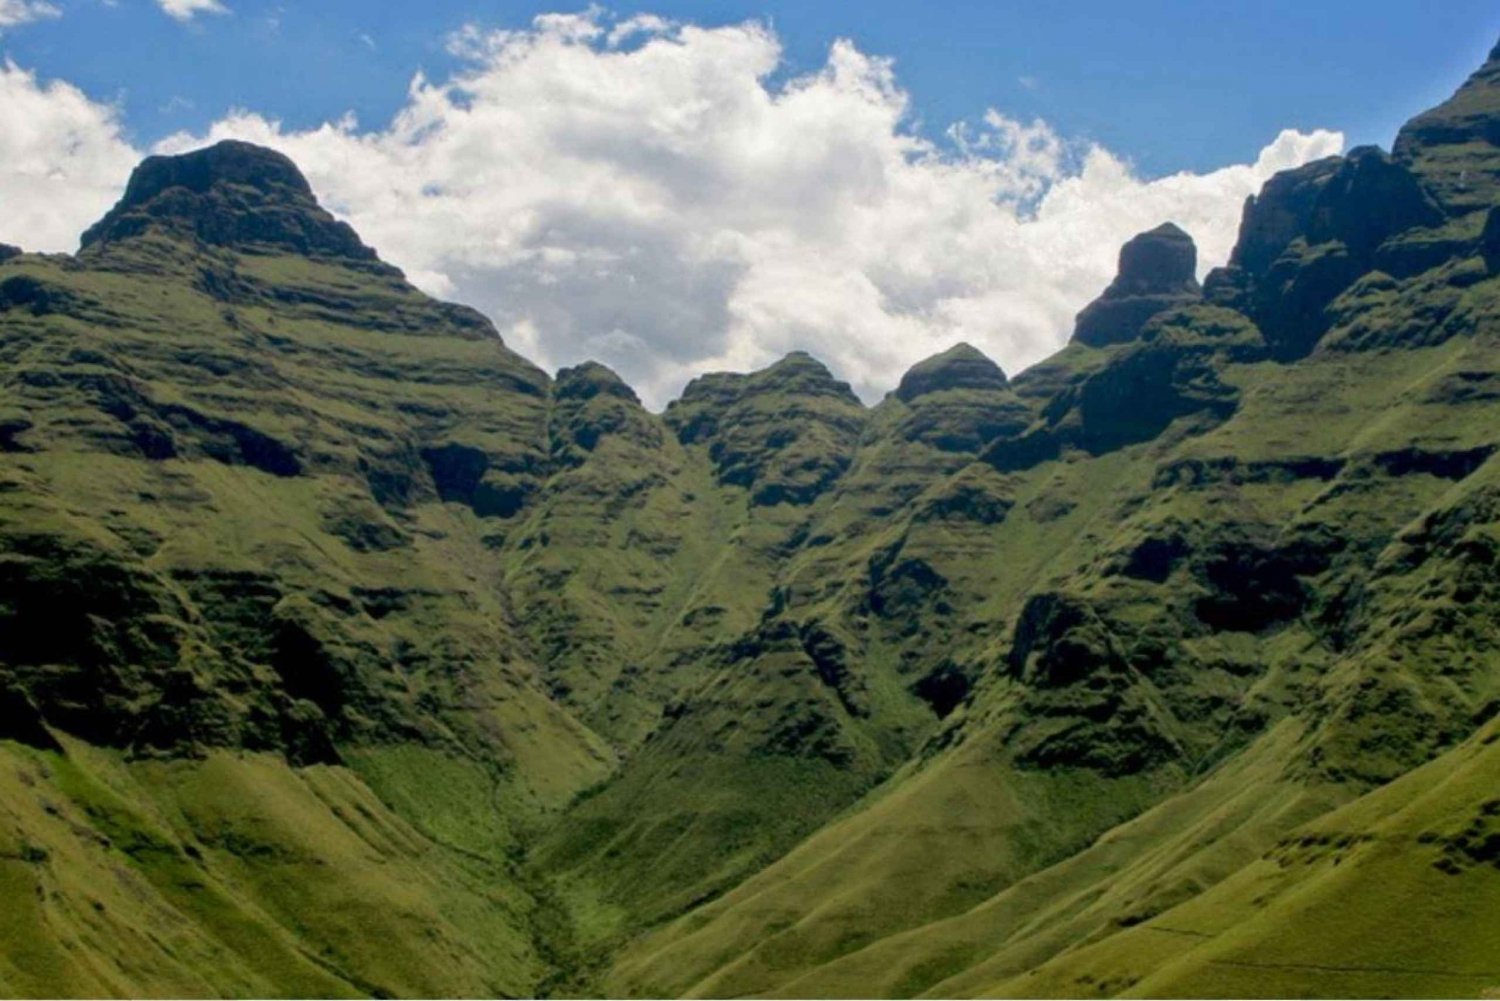 1/2 dags Drakensberg-bjergene og vandretur fra Durban